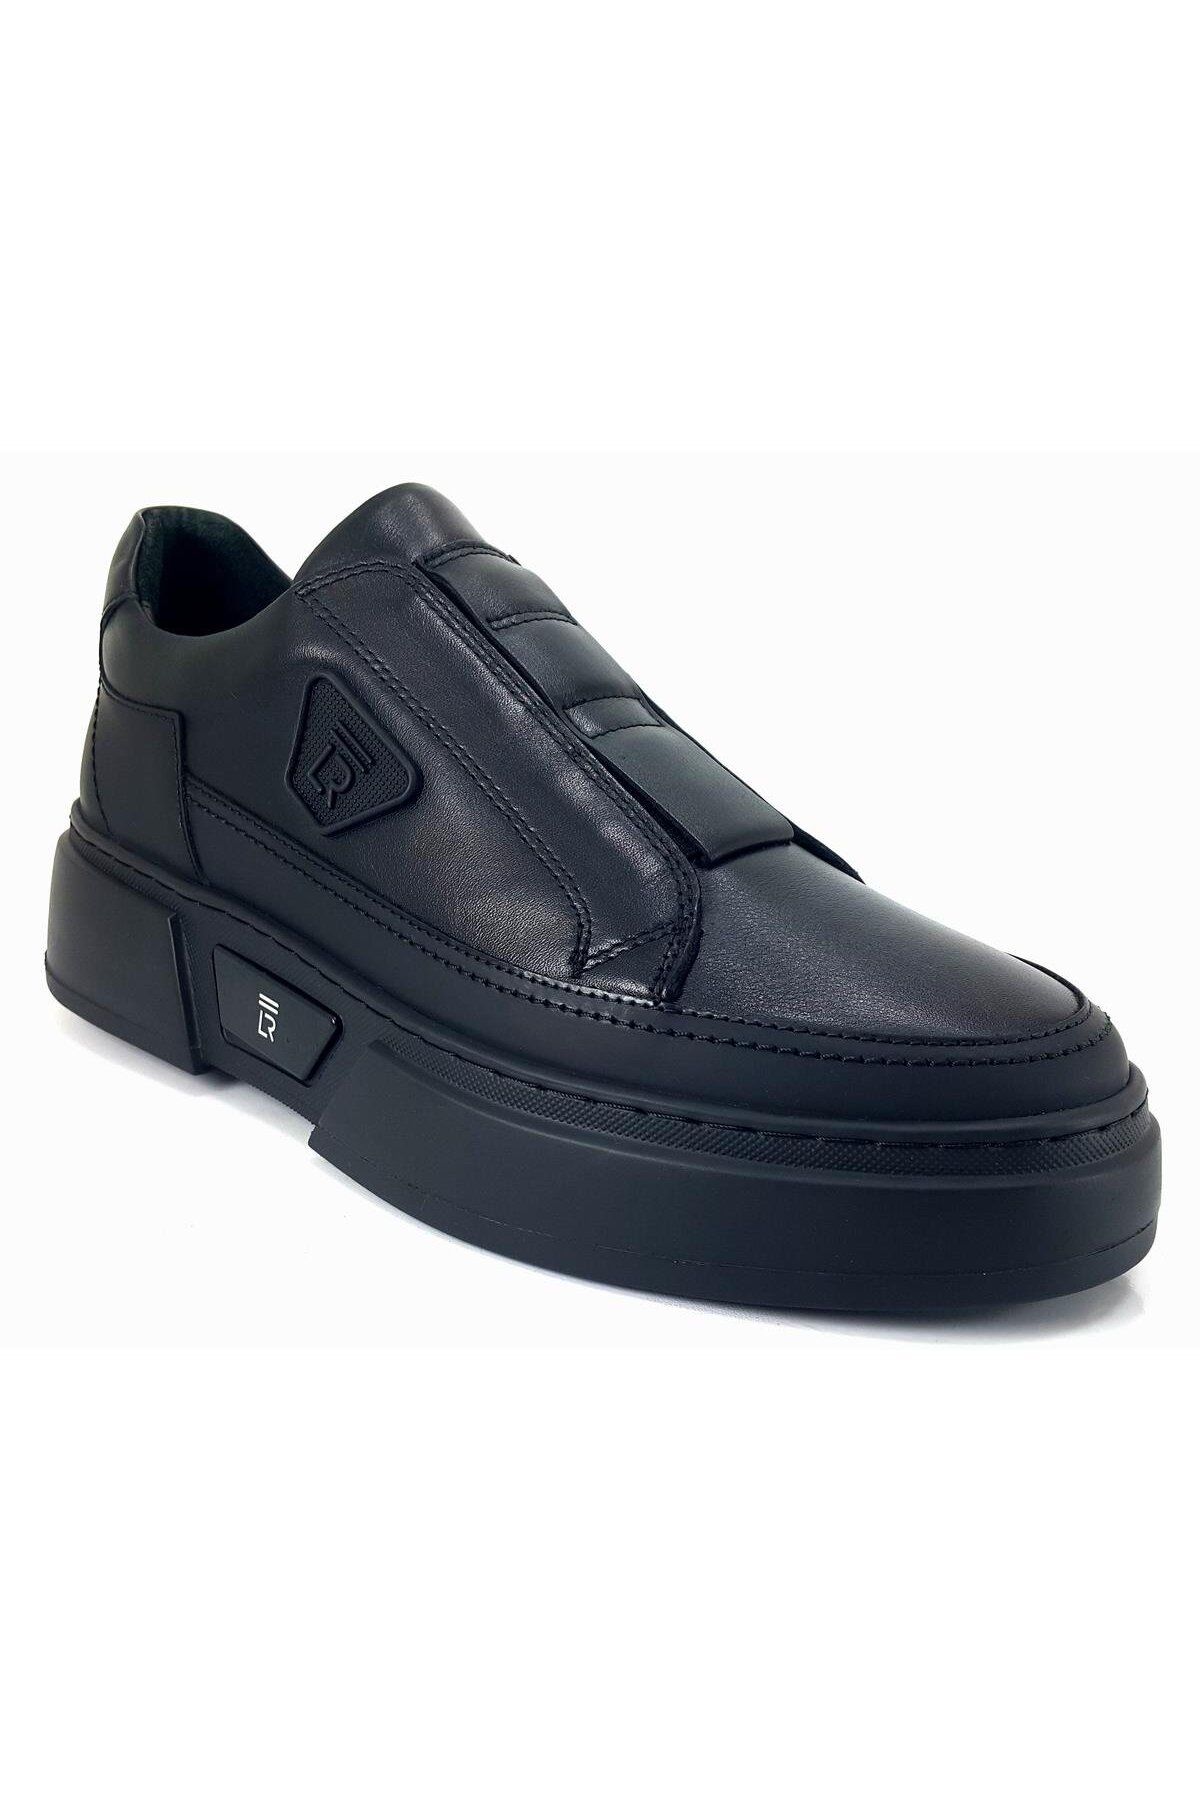 Libero 4995 23ka Erkek Günlük Ayakkabı - Siyah